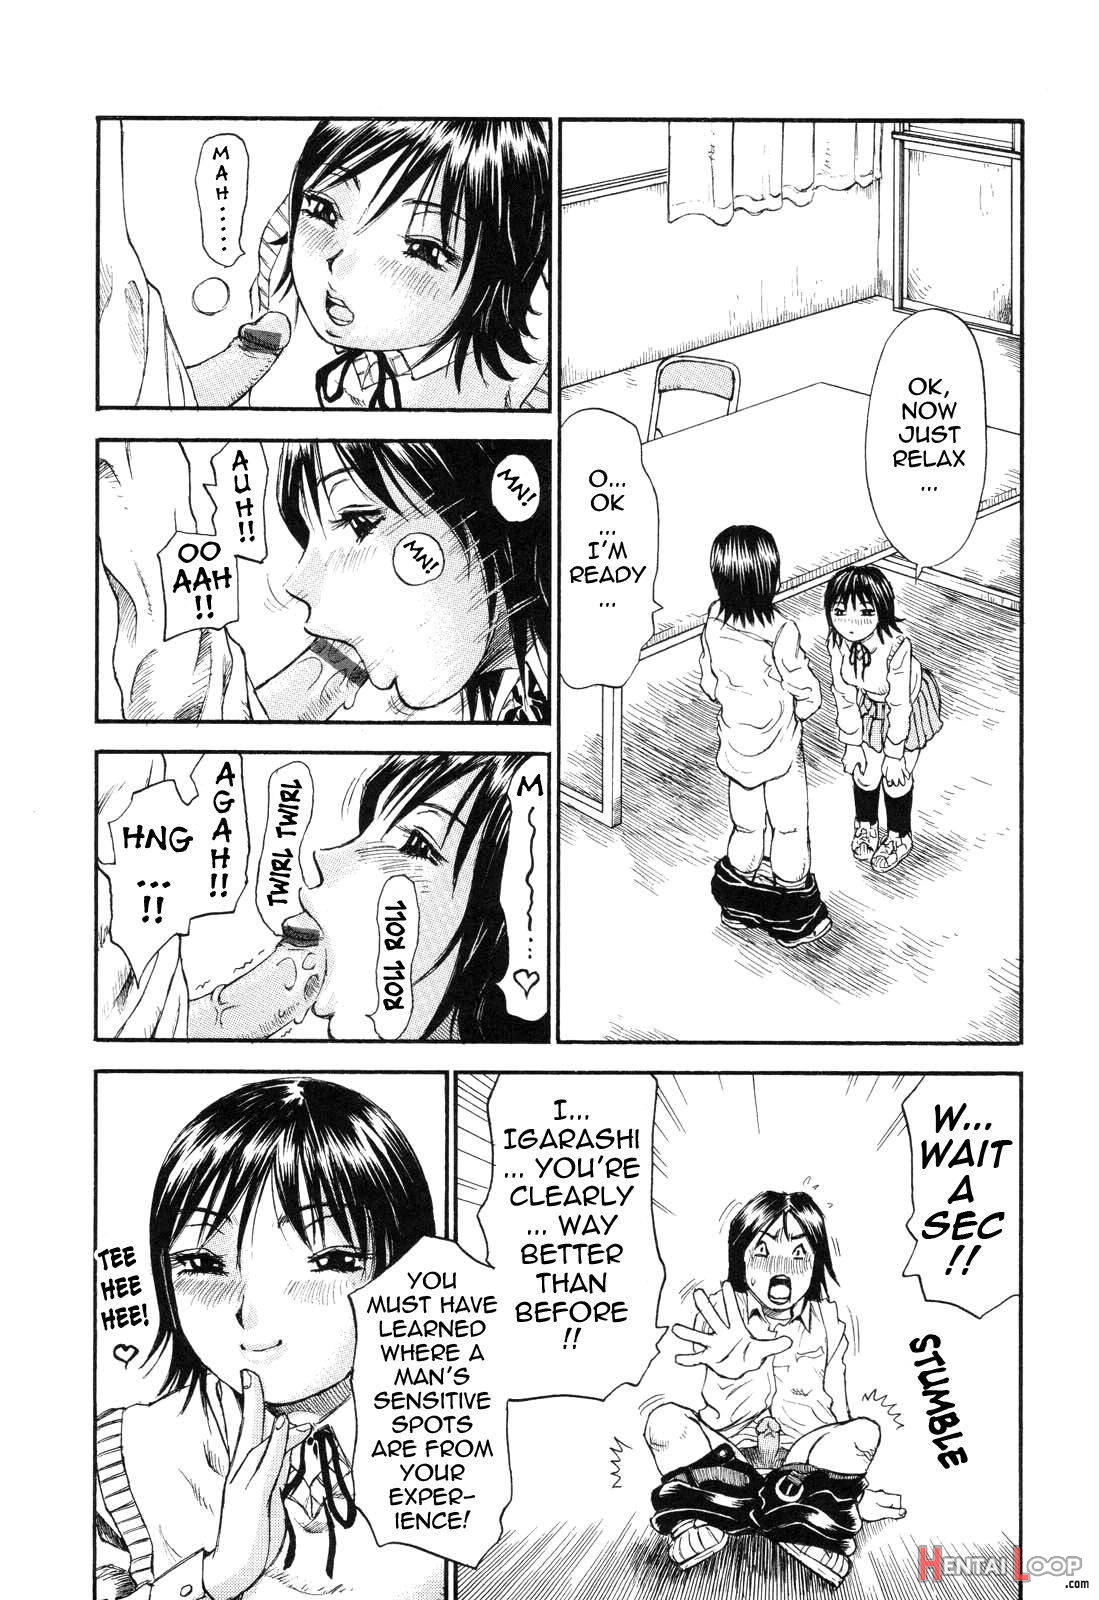 Umarete Hajimete page 149